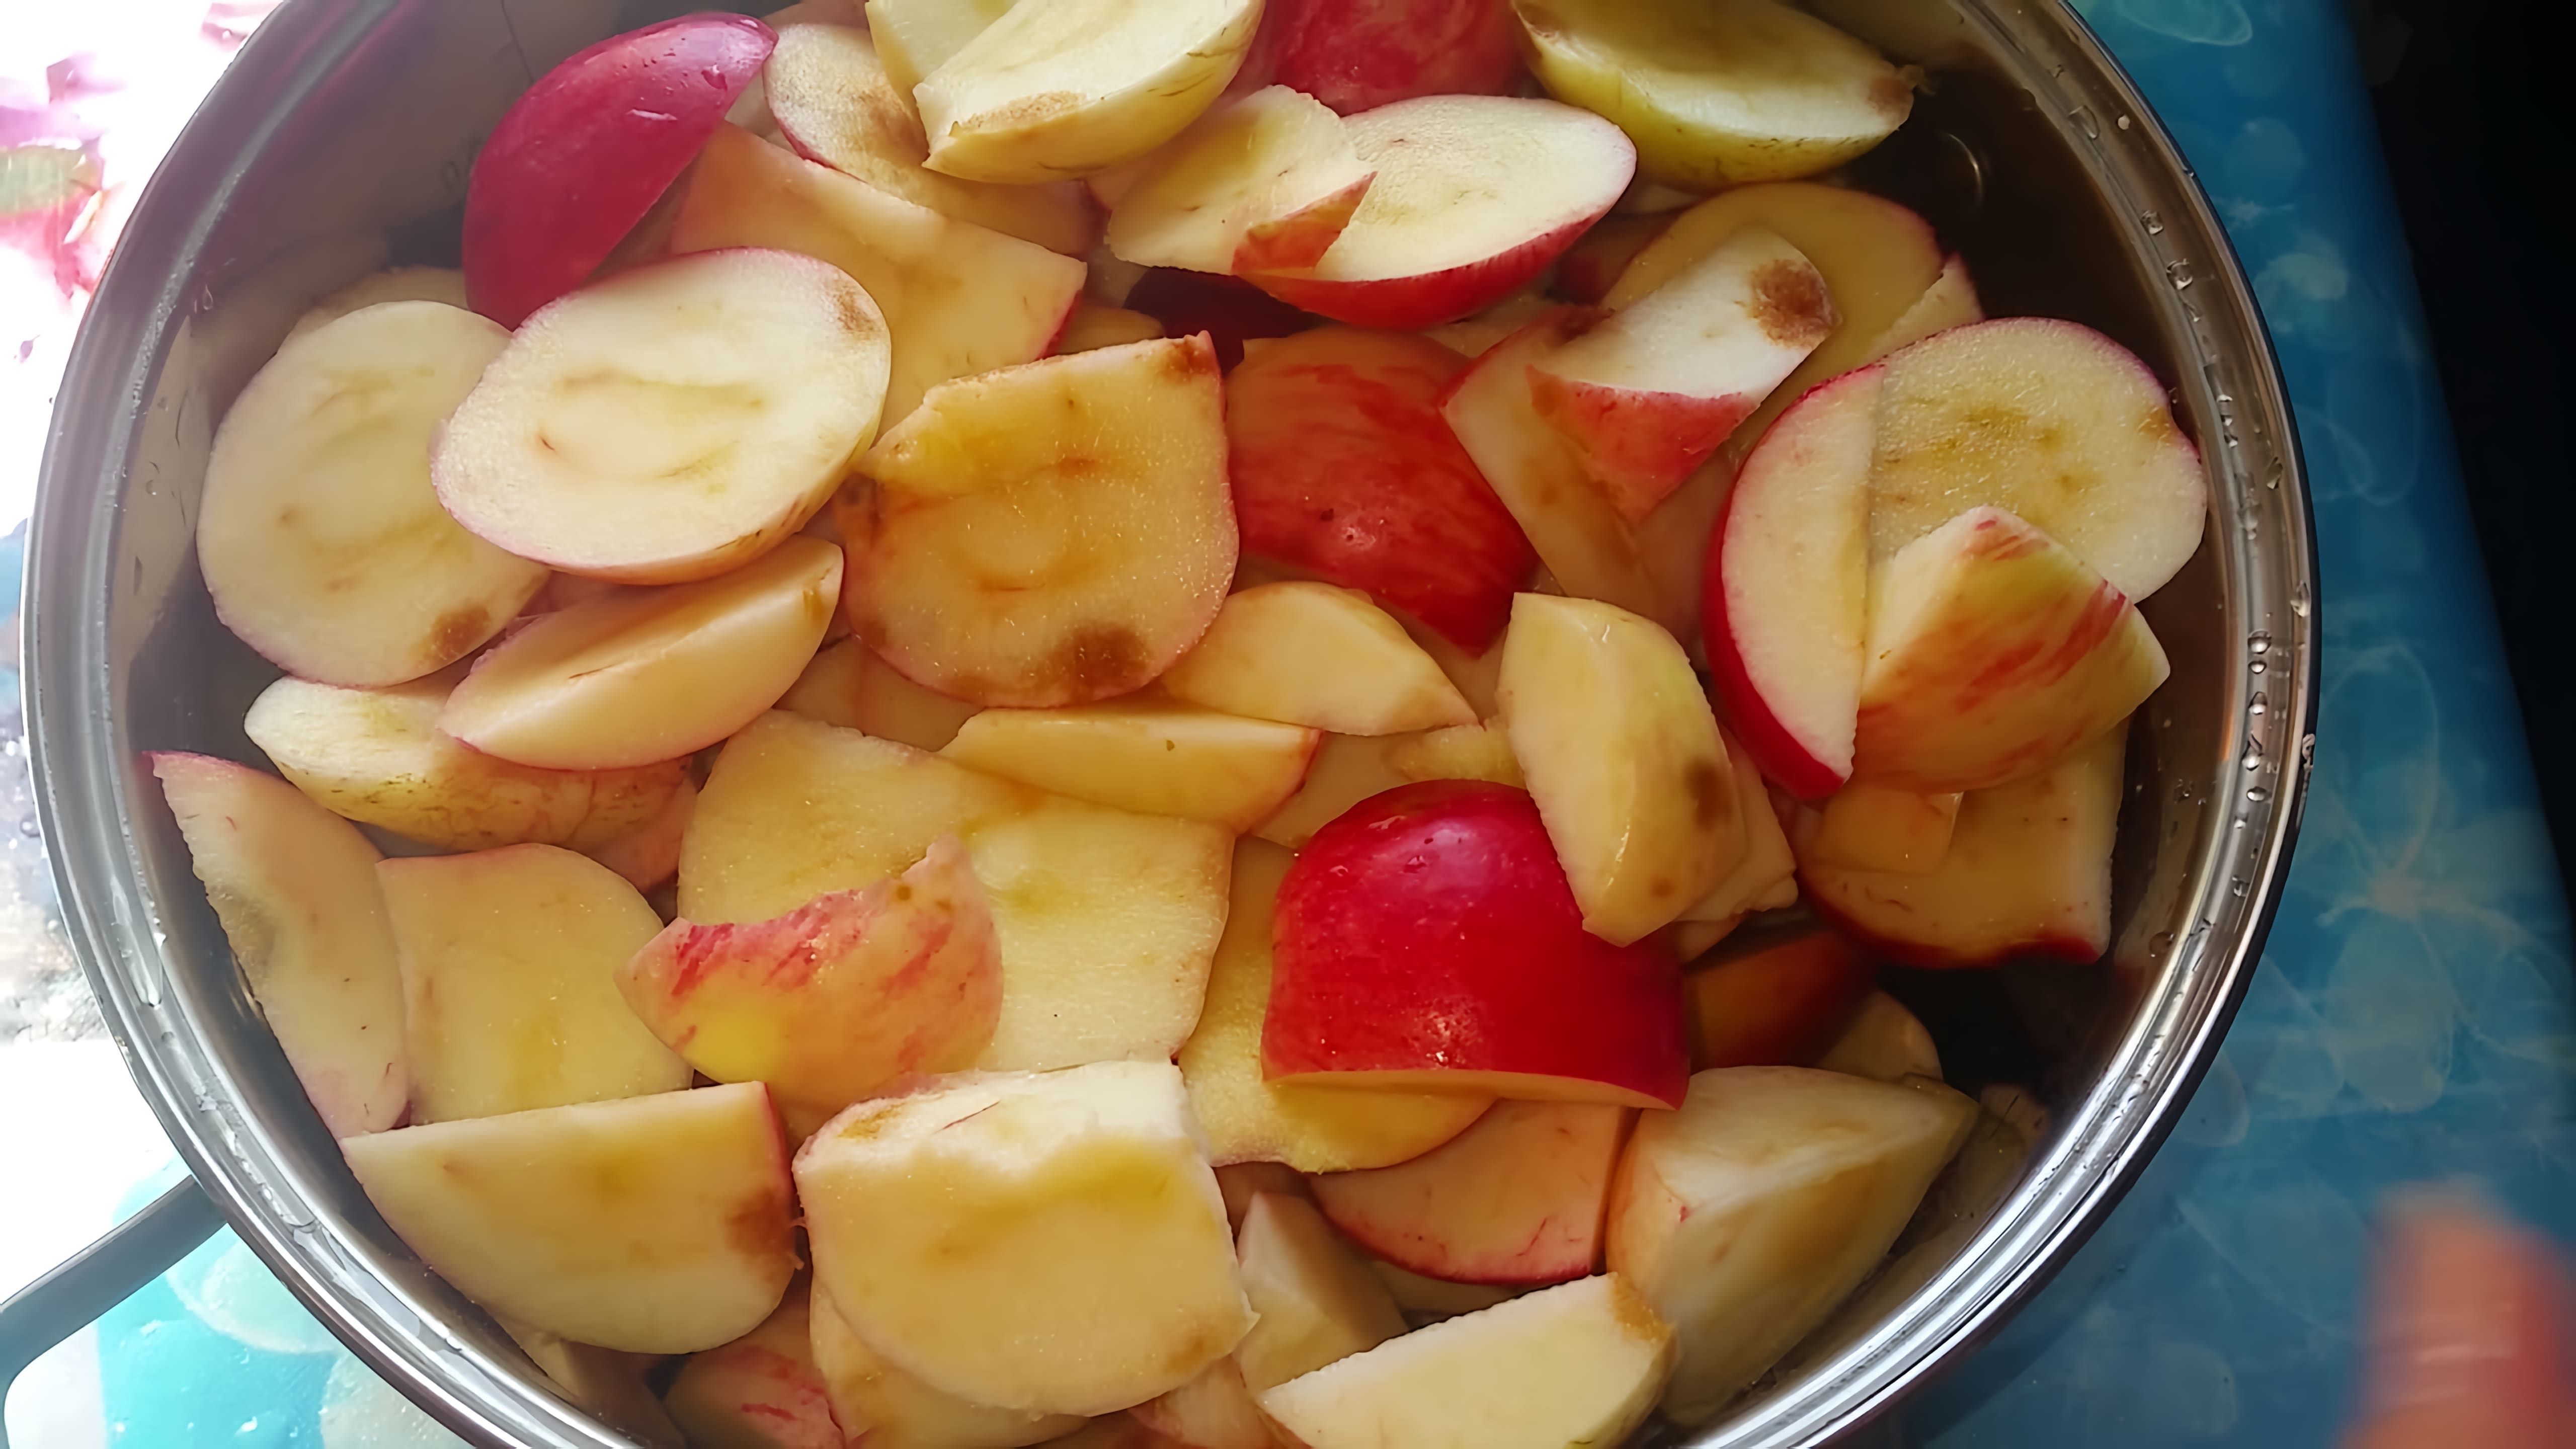 В этом видео автор показывает процесс приготовления яблочного джема